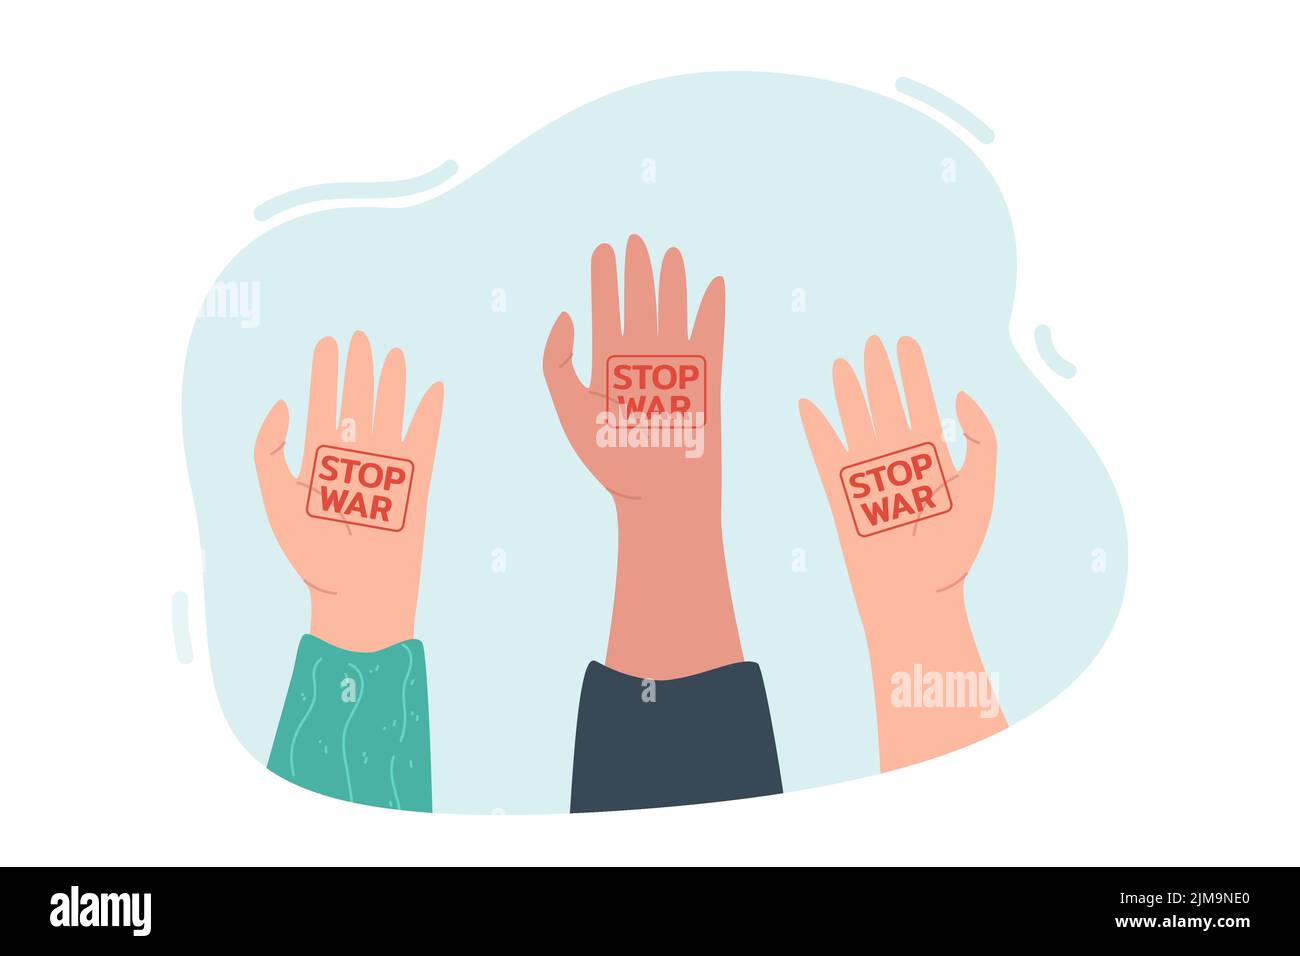 Menschliche Hände erheben sich mit Stop-war-Zeichen auf Handflächen. Völker protestieren gegen Krieg und Gewalt flache Vektordarstellung. Frieden, Kampf, Solidarität concep Stock Vektor